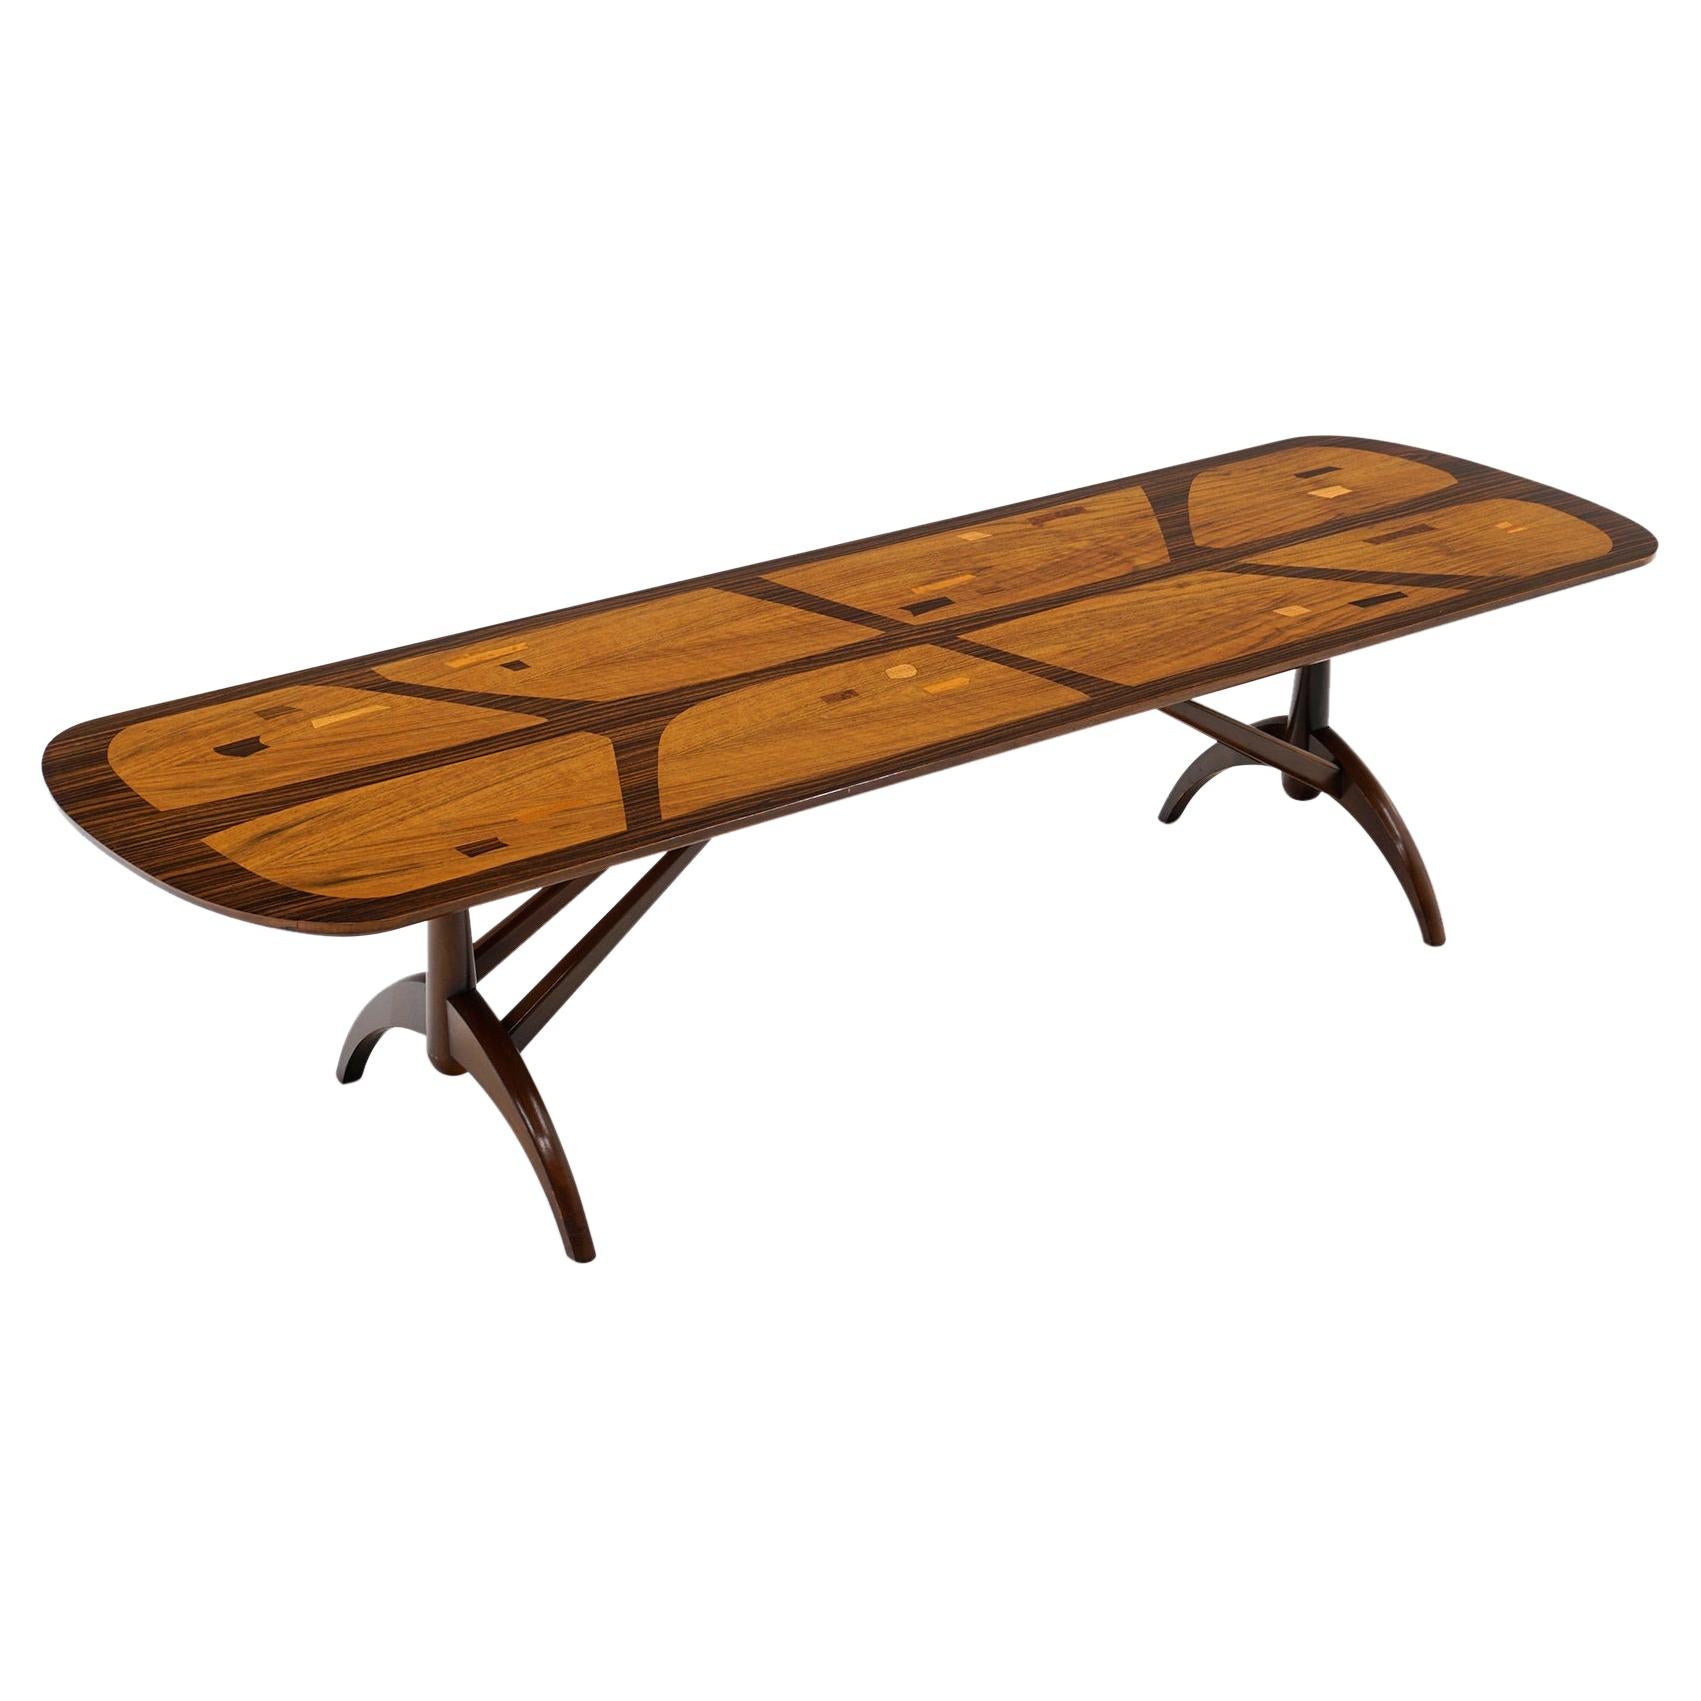 Table basse de conception en bois mixte incrusté, rectangulaire, peut-être d'origine brésilienne